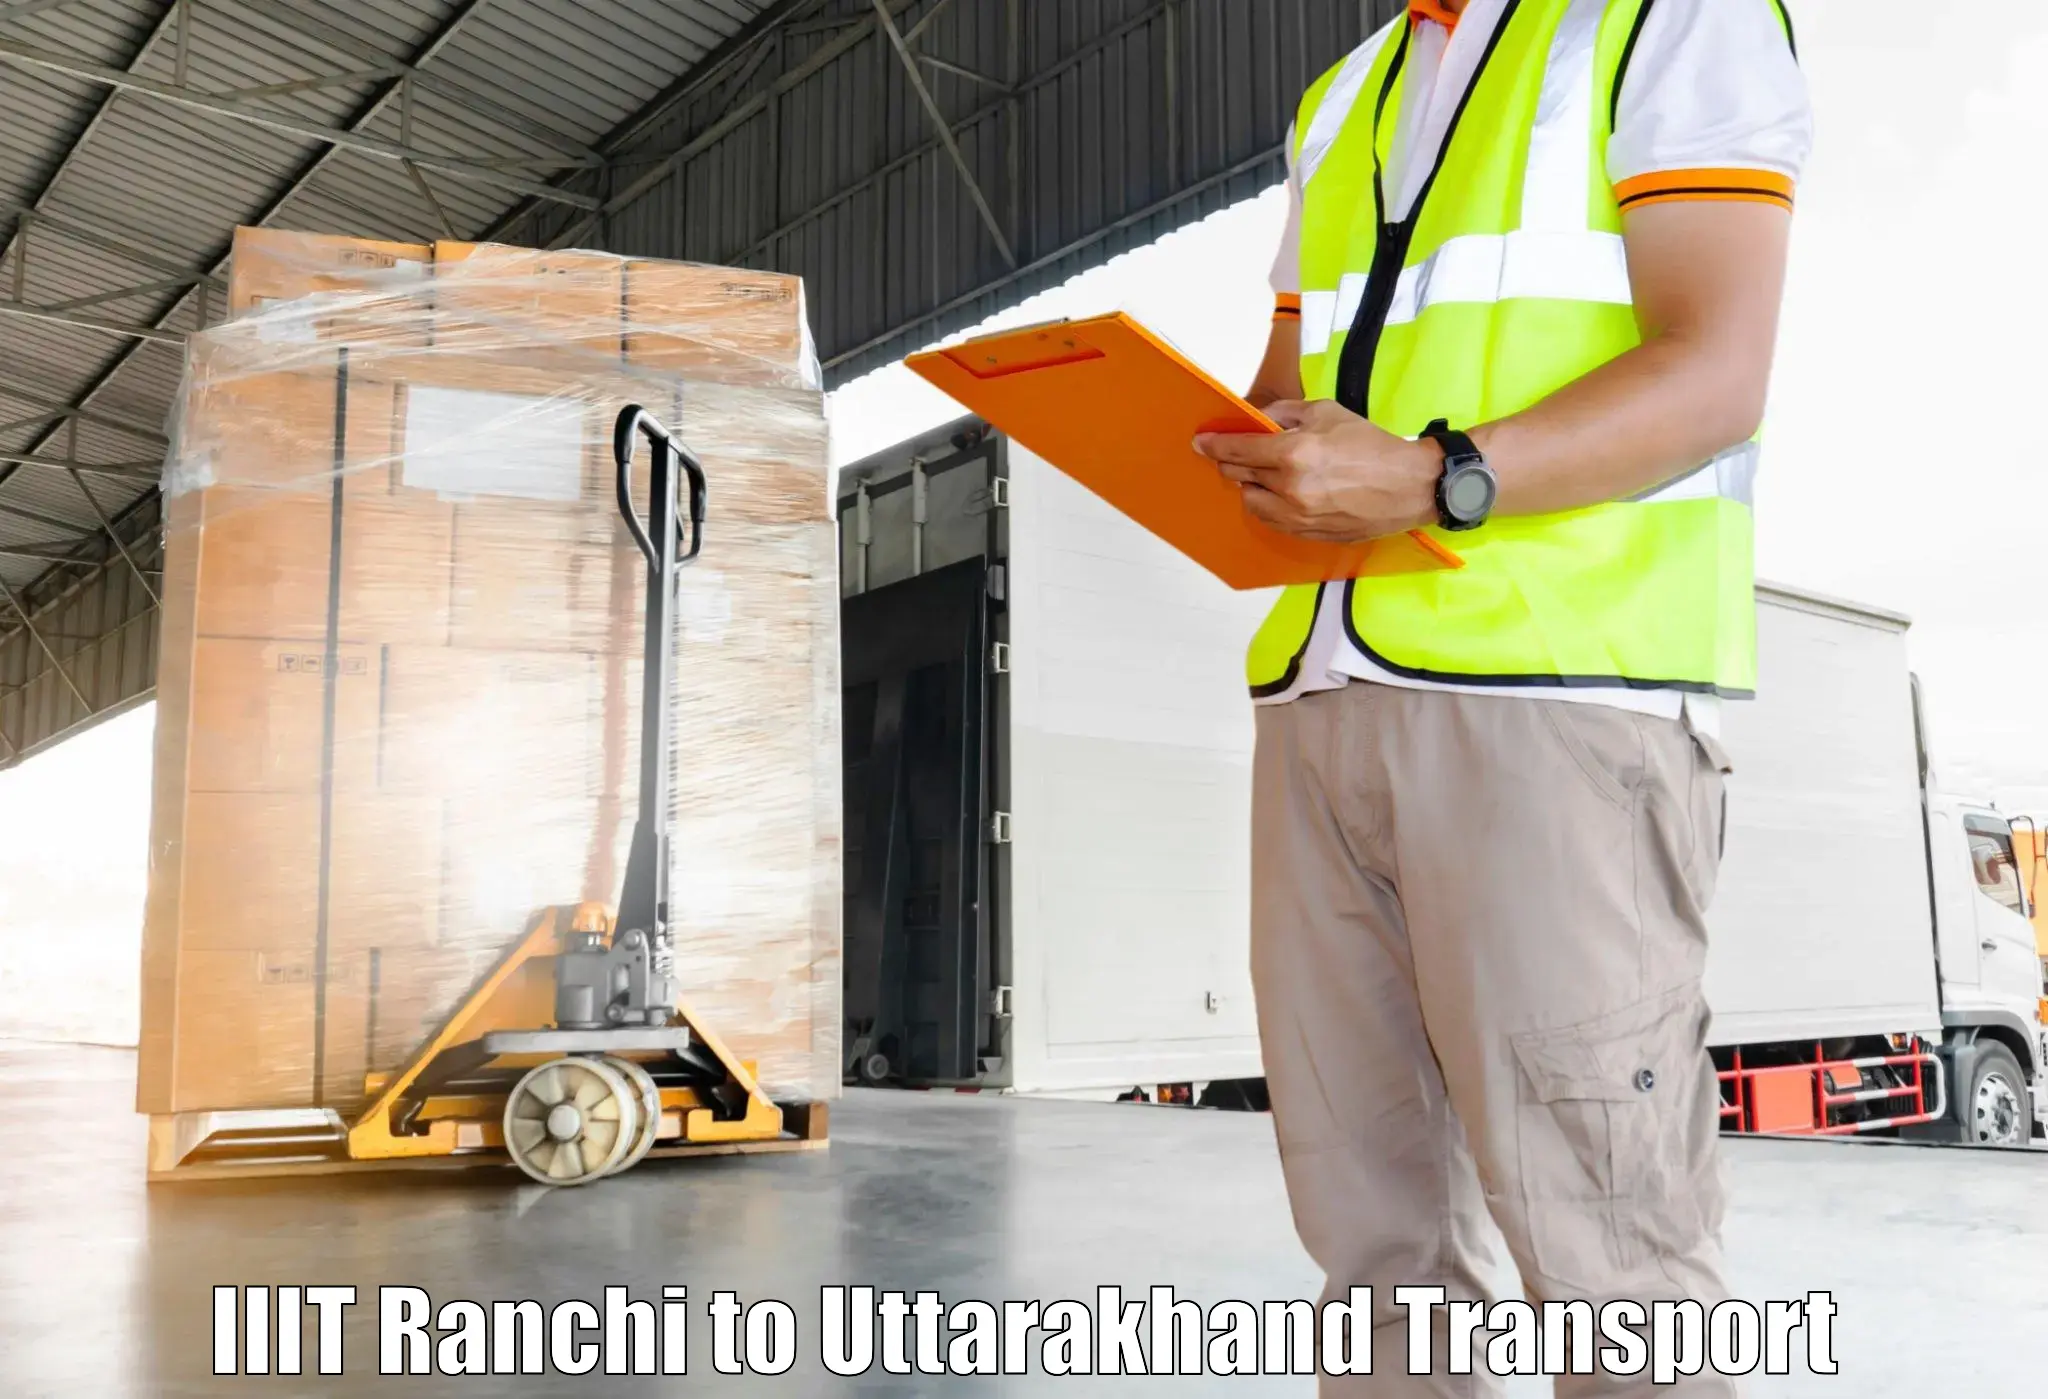 Intercity goods transport IIIT Ranchi to Roorkee